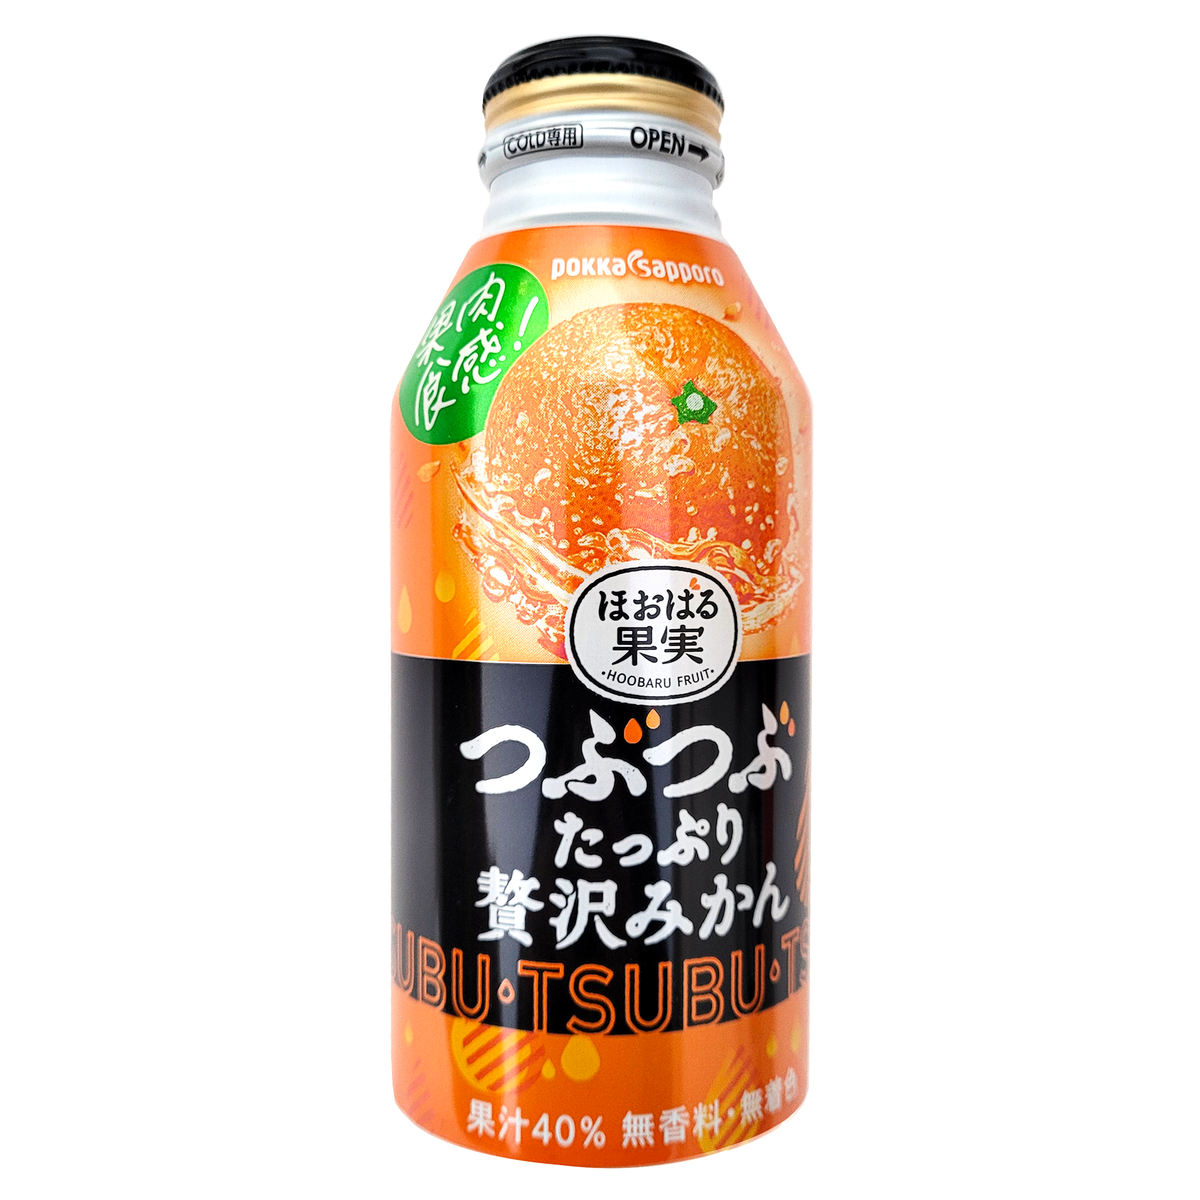 Pokka Sapporo Tsubu Mikan Drink - 13.3 oz